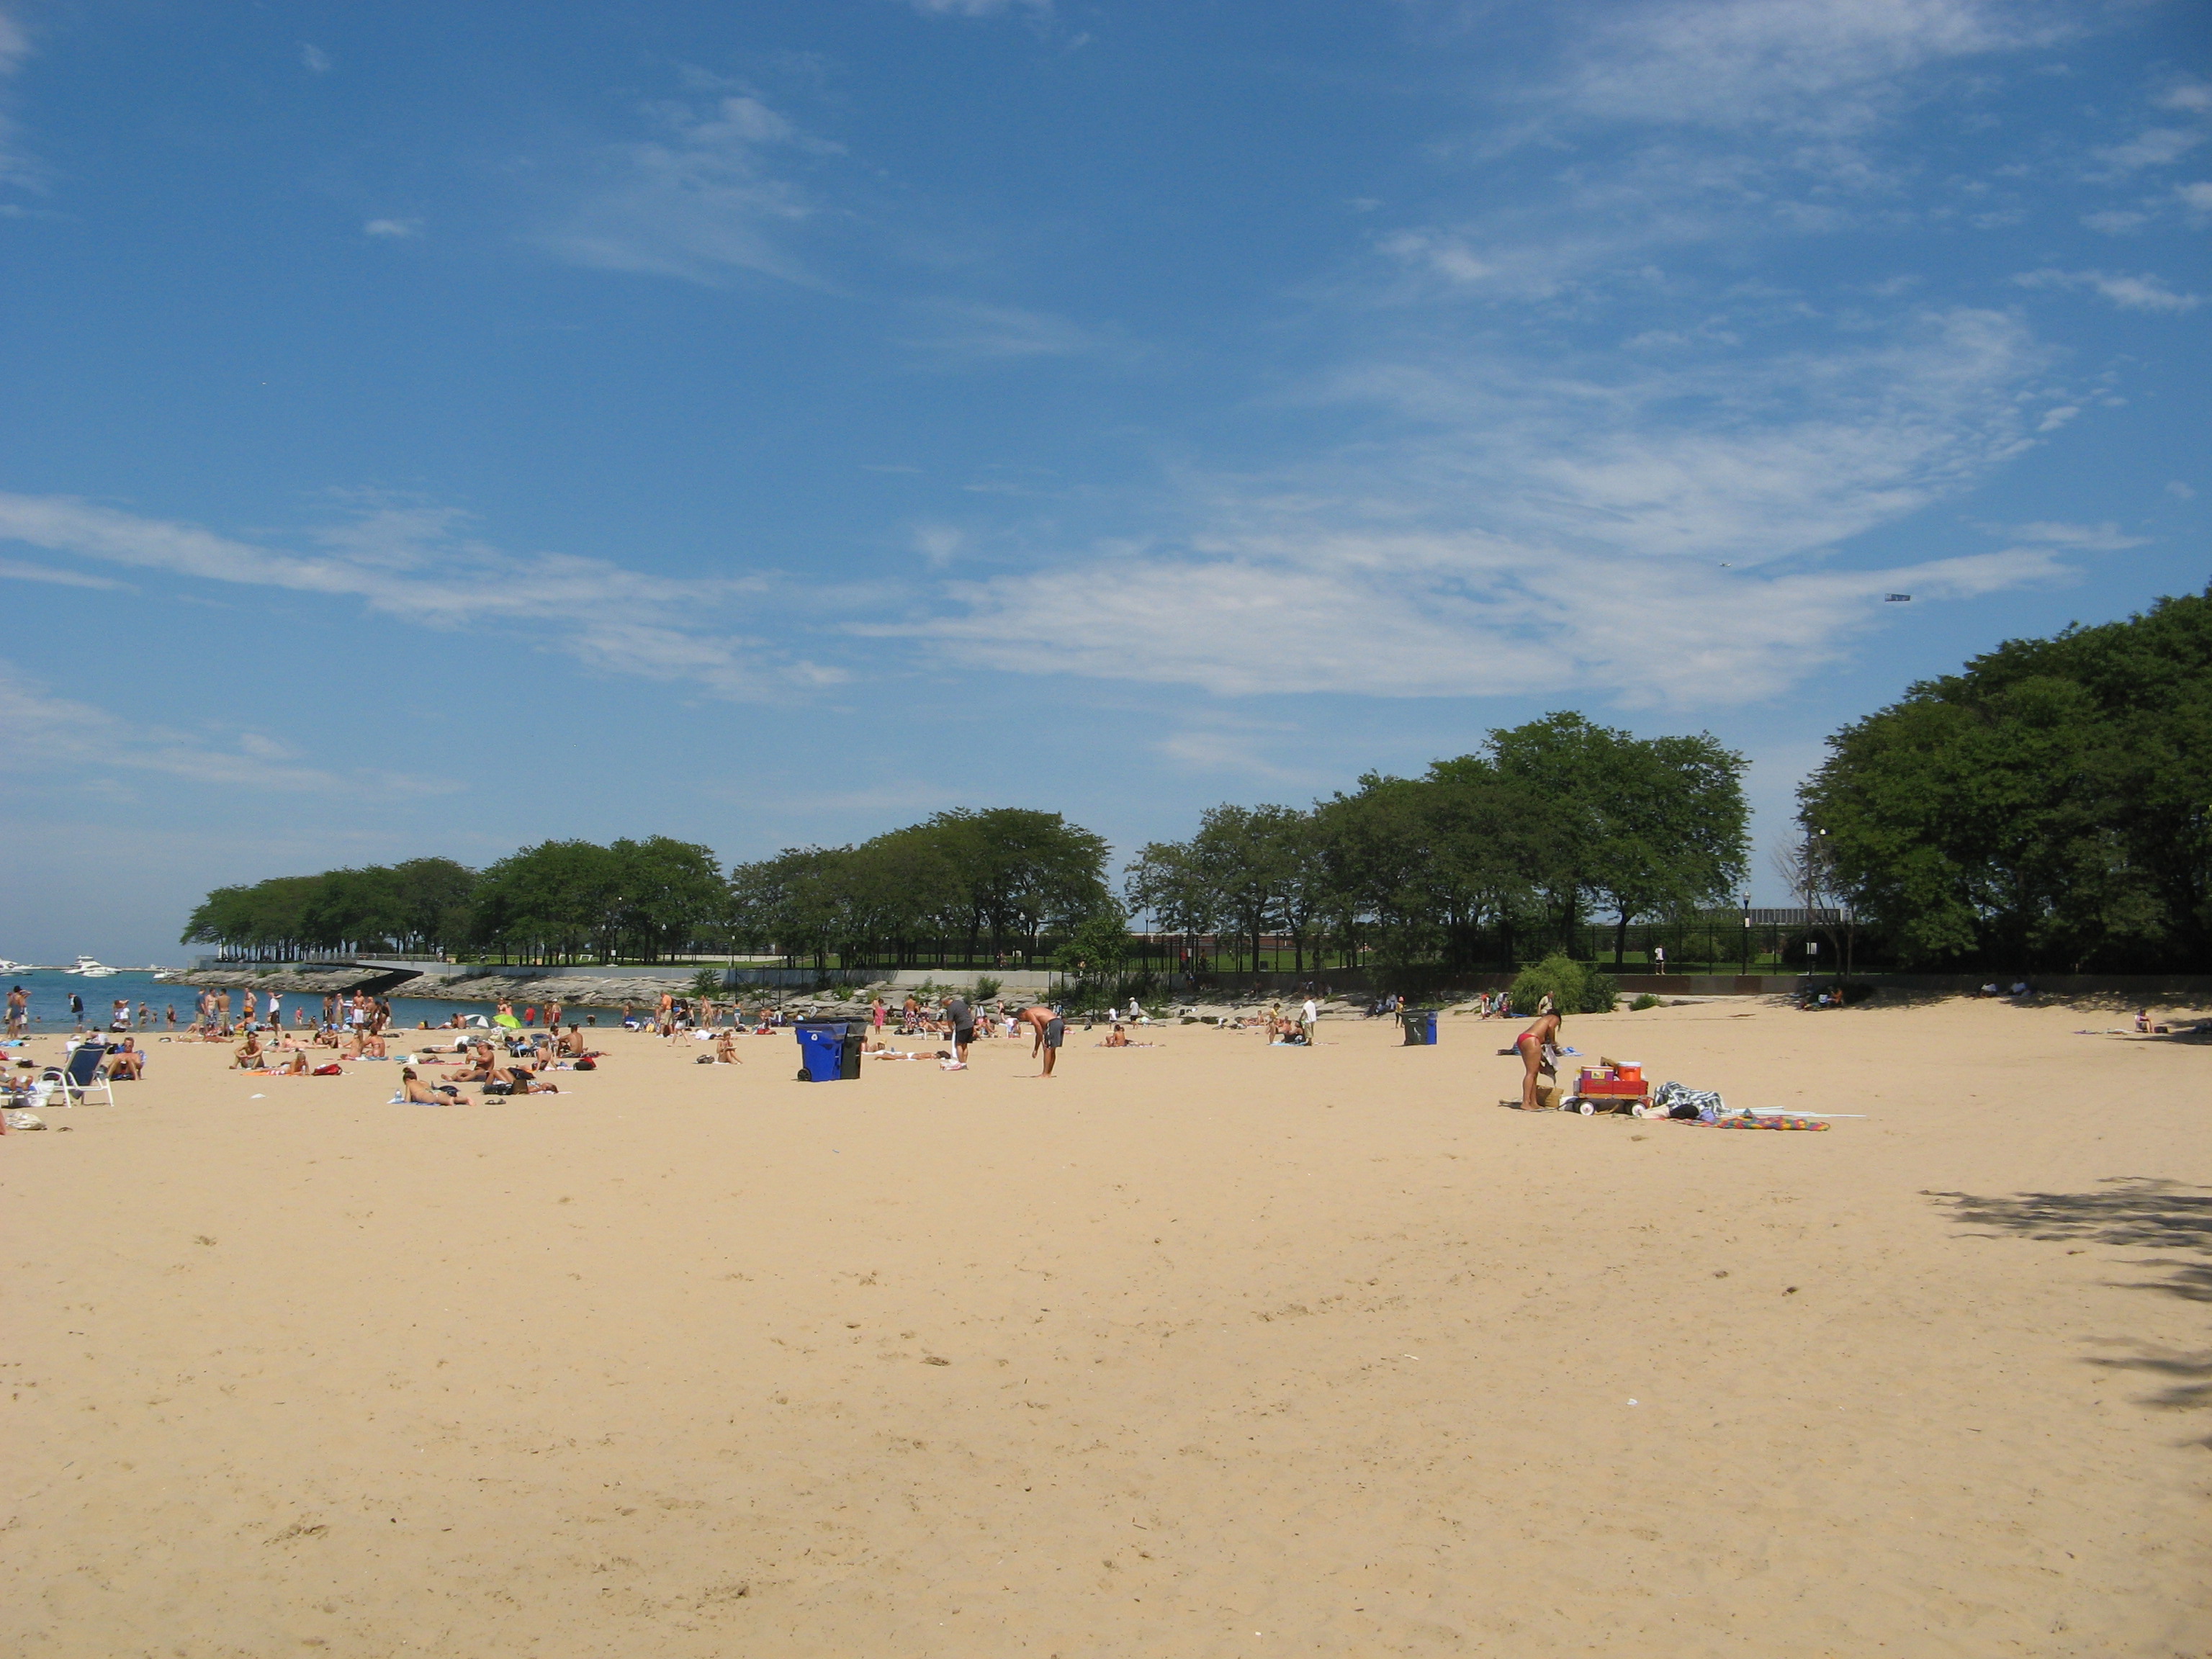 File:Chicago Beaches - Ohio Street Beach 4.jpg - Wikimedia Commons